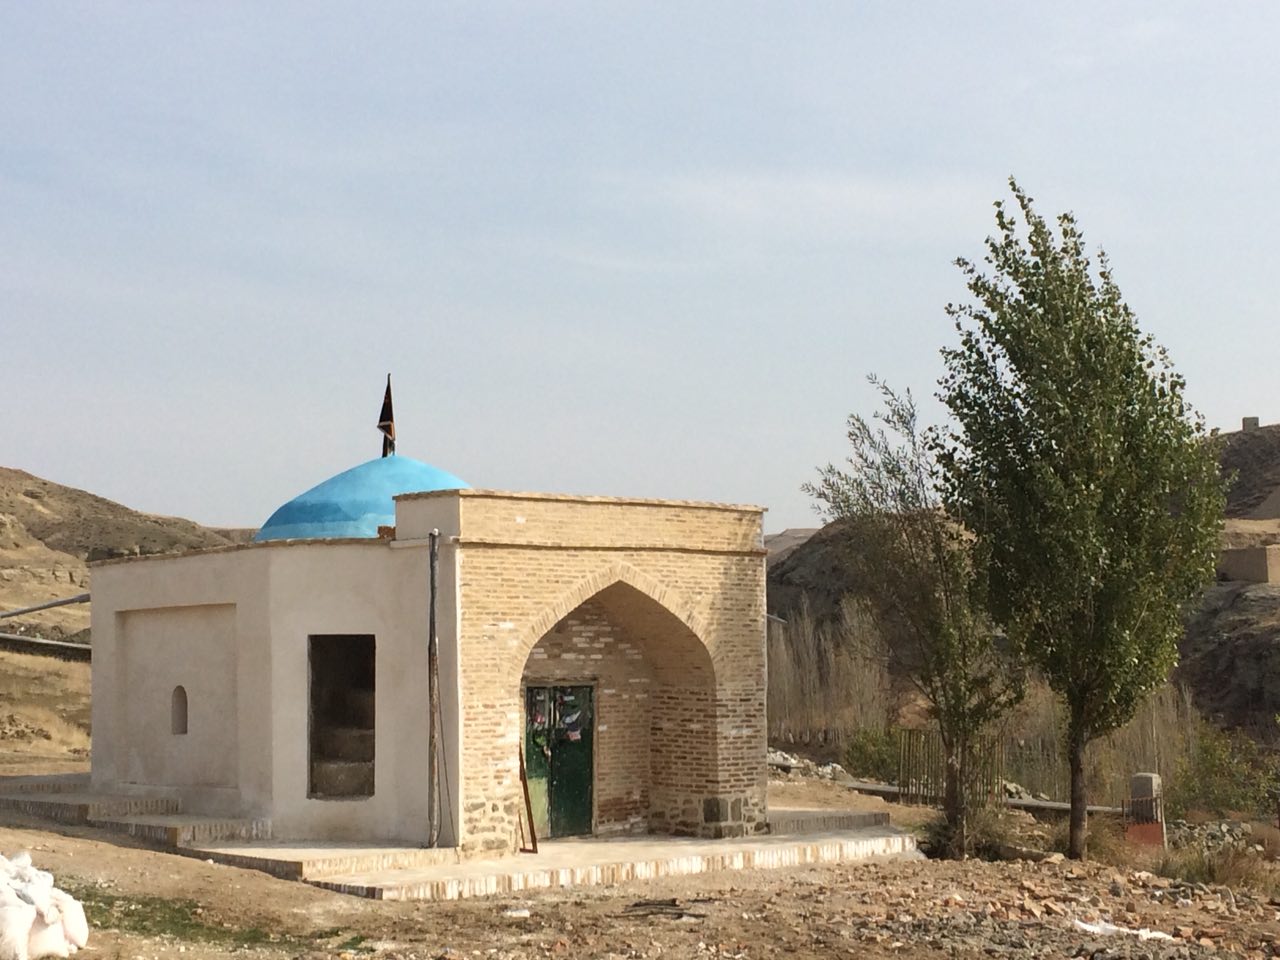 شاهزاده حمید بنایی با معماری سنتی در راز و جرگلان